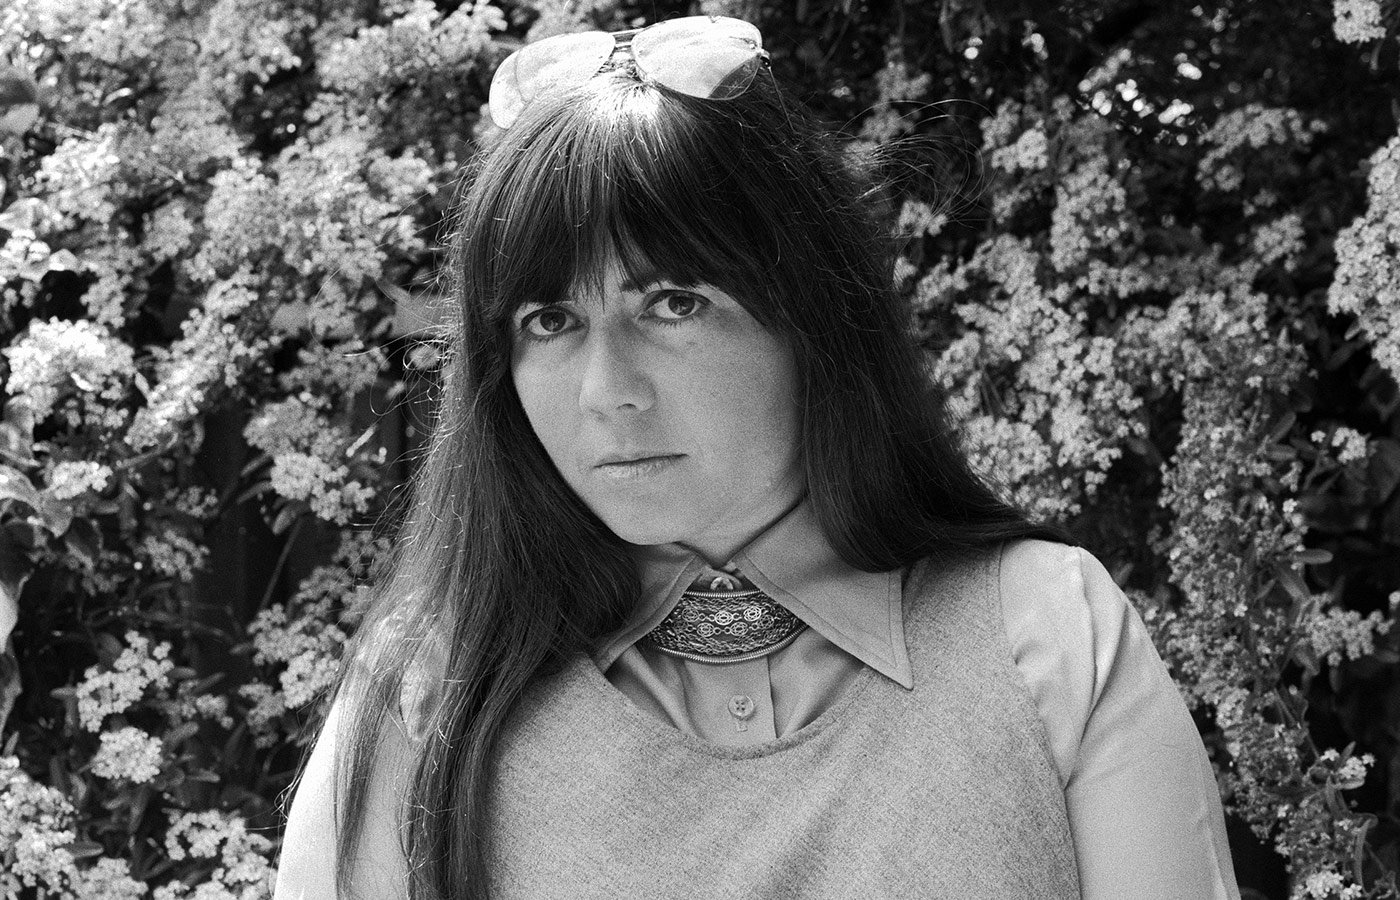 Энн Райс у себя в саду. Беркли, Калифорния, 1976 год. Фото: Джанет Фрайс / Getty Images